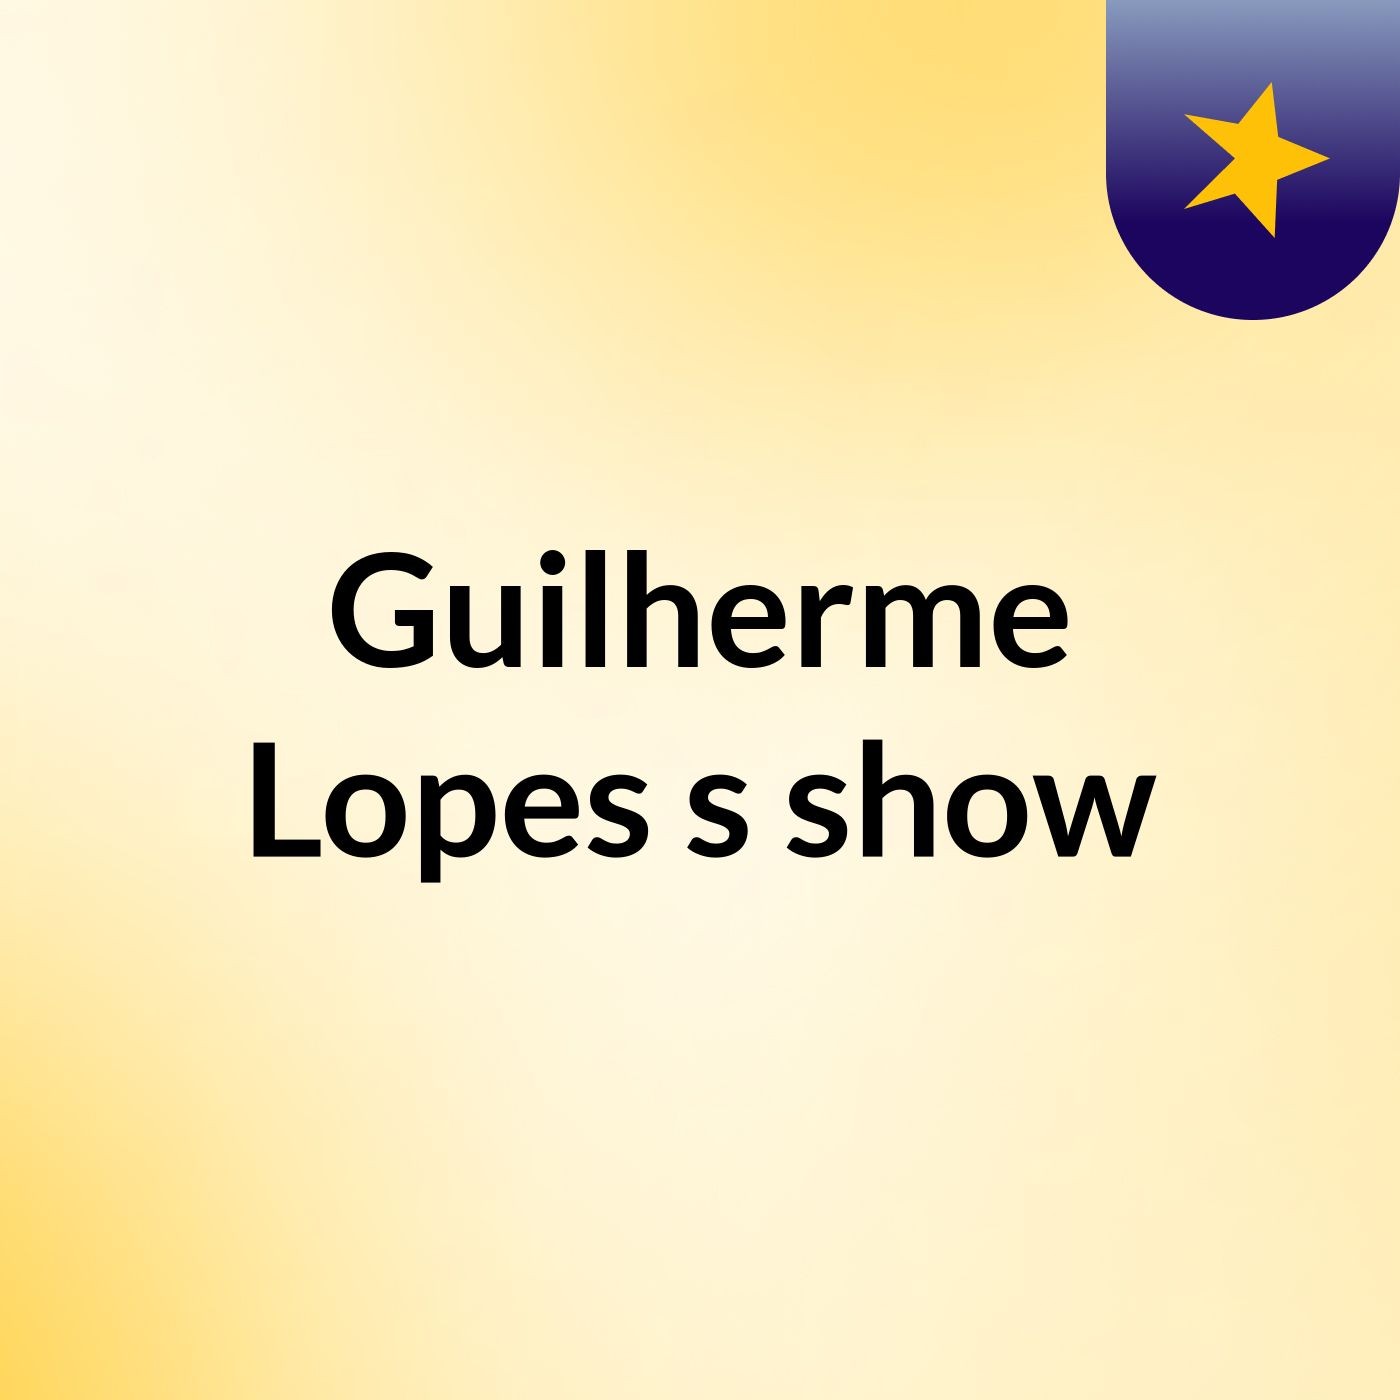 Guilherme Lopes's show